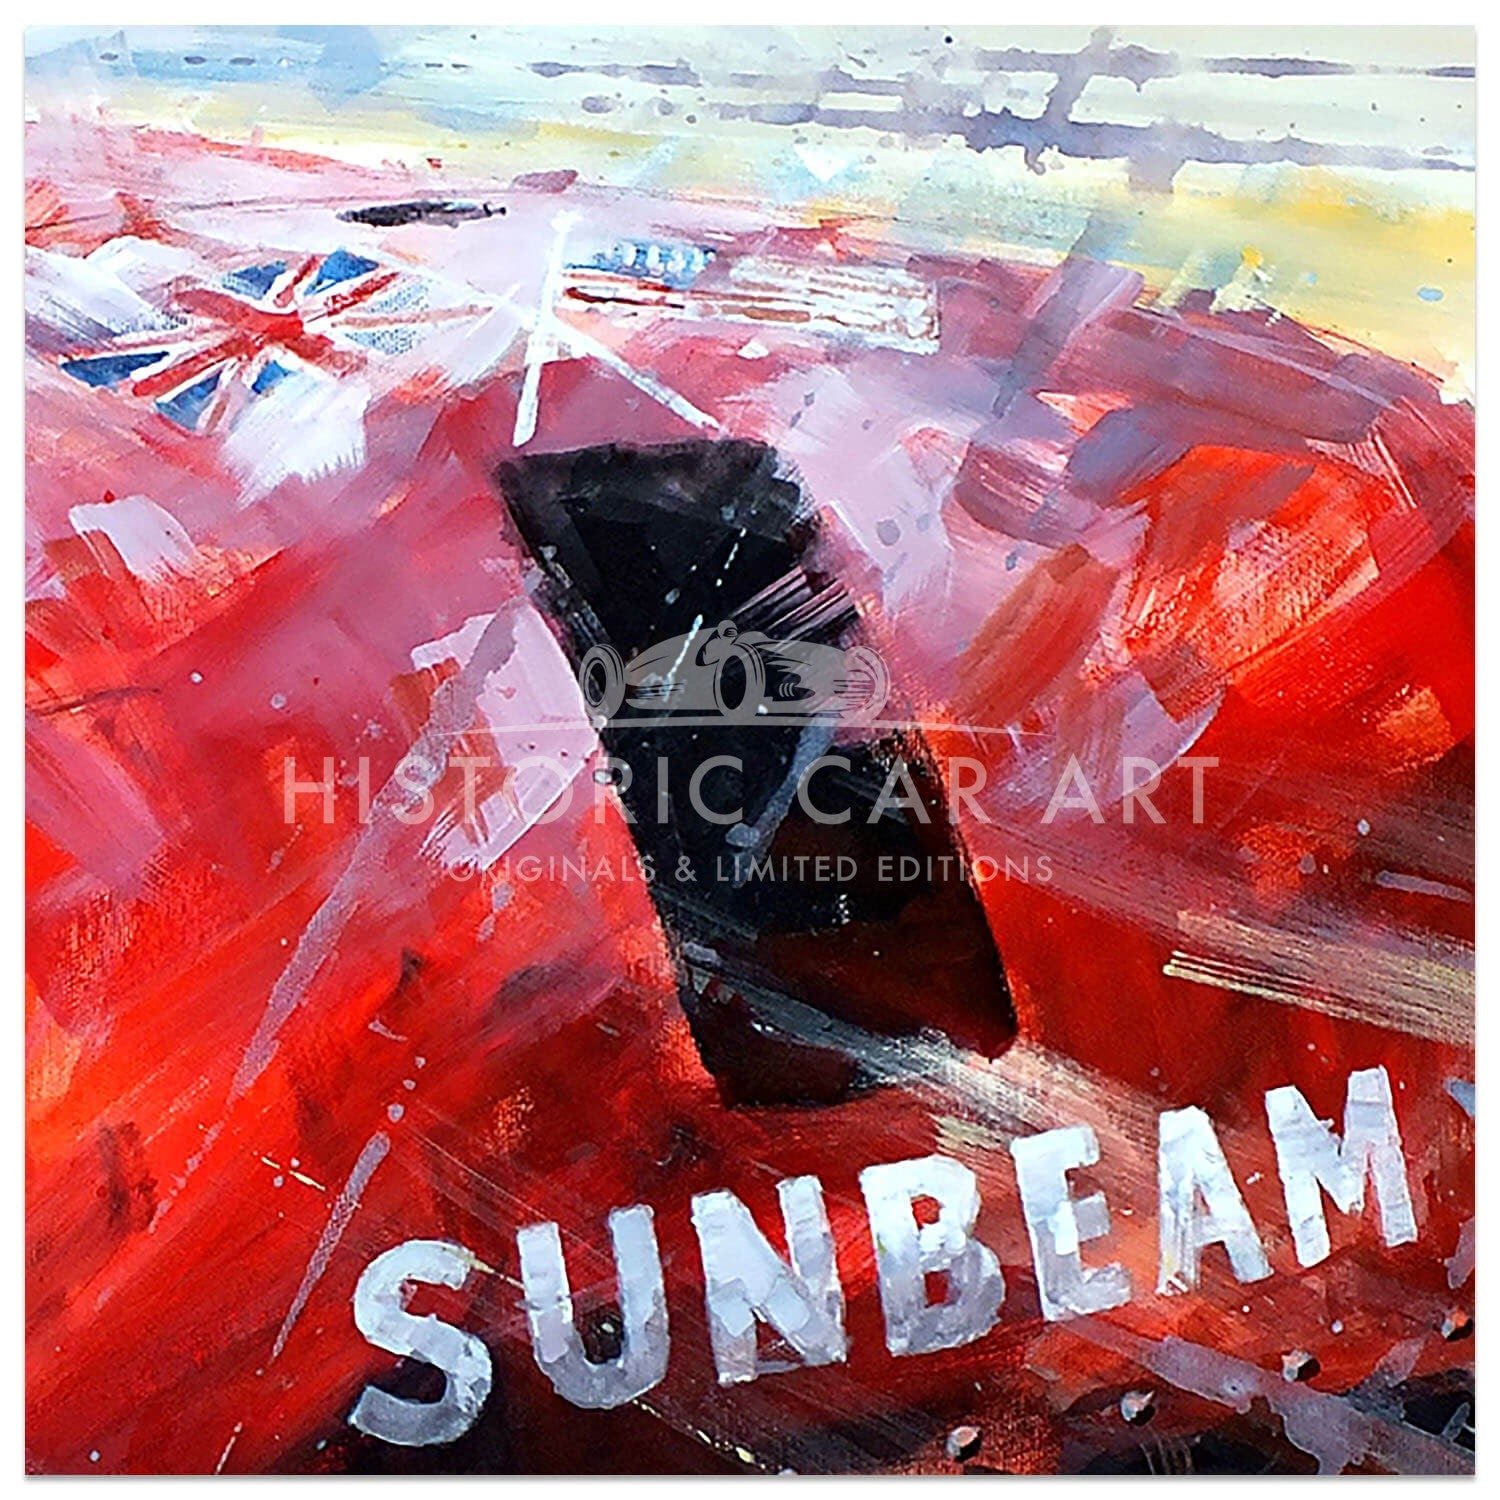 Seeing Red | Henry Segrave | 1927 1000hp Sunbeam | Daytona | Painting